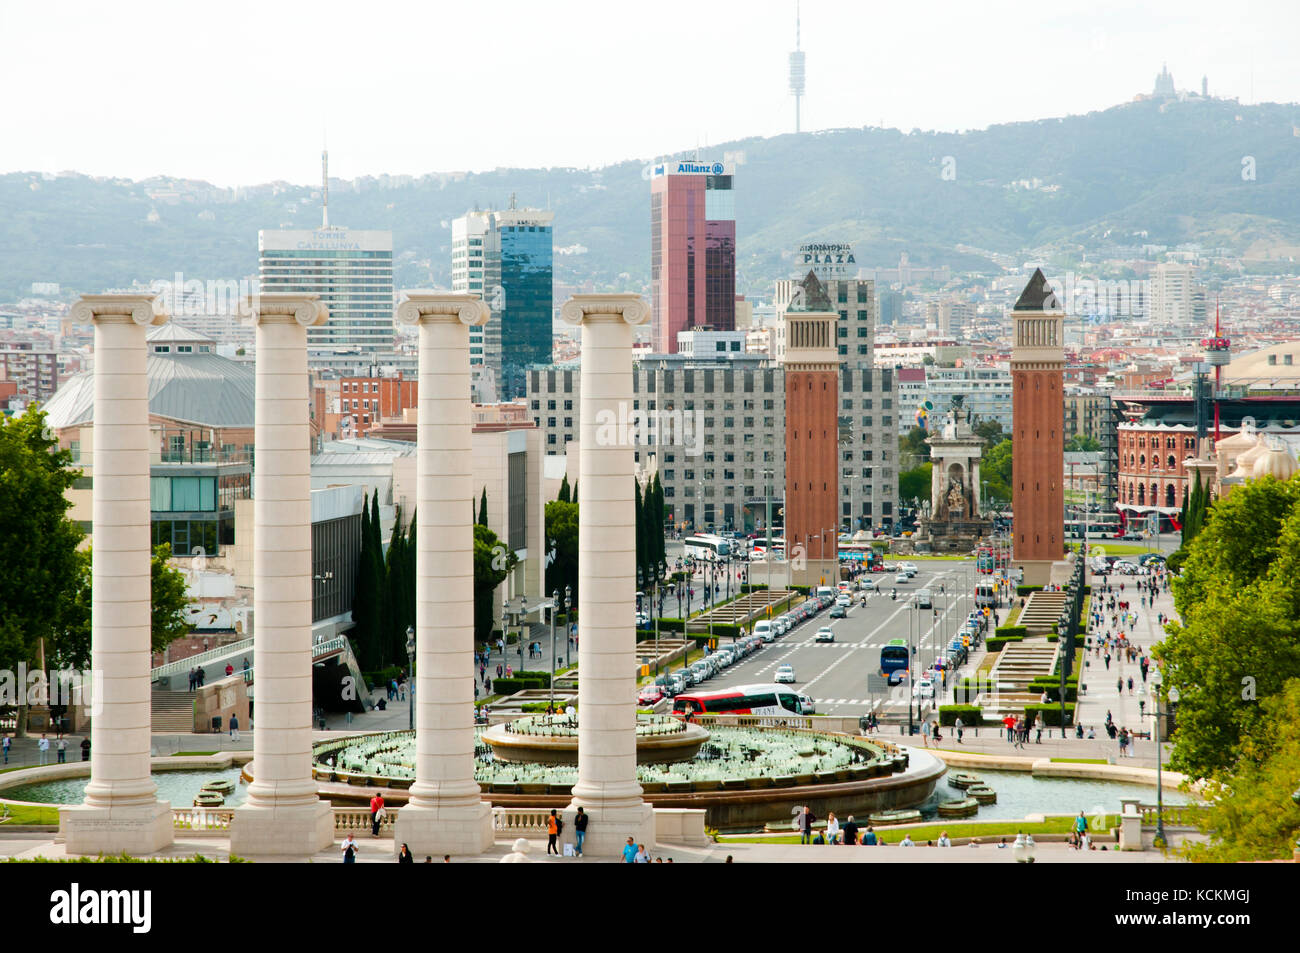 Barcelone, Espagne - 24 mai 2016 : vue de l'avenue Reina Maria Cristina de musée national d'art de Catalogne Banque D'Images